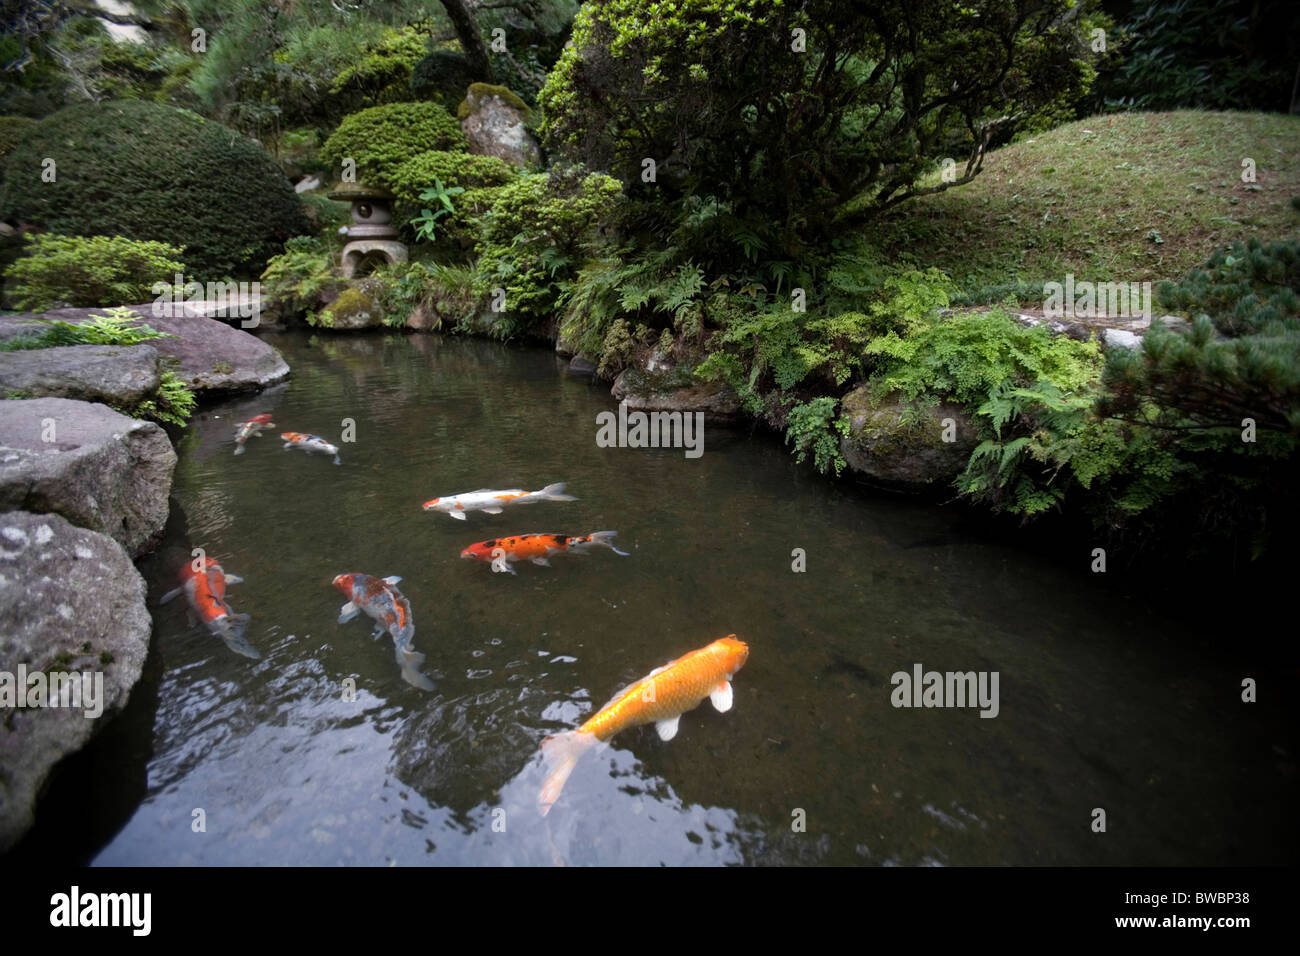 Fische in einem Gartenteich, Beppu, Japan. Stockfoto